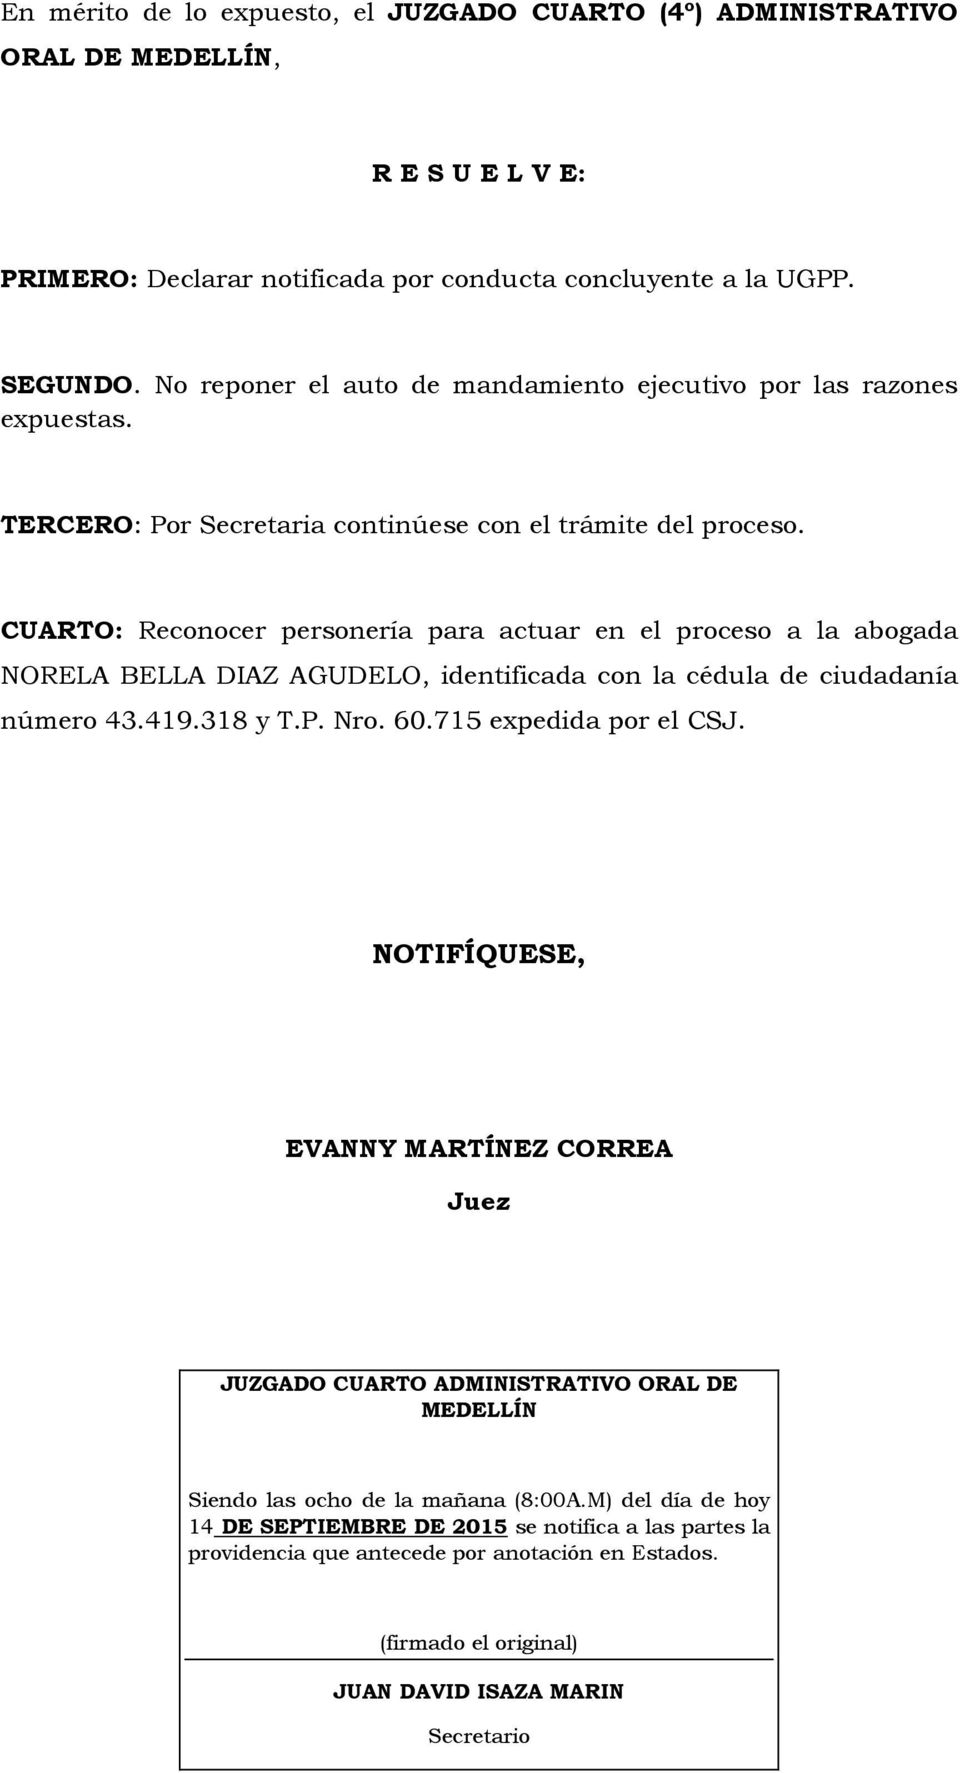 CUARTO: Reconocer personería para actuar en el proceso a la abogada NORELA BELLA DIAZ AGUDELO, identificada con la cédula de ciudadanía número 43.419.318 y T.P. Nro. 60.715 expedida por el CSJ.